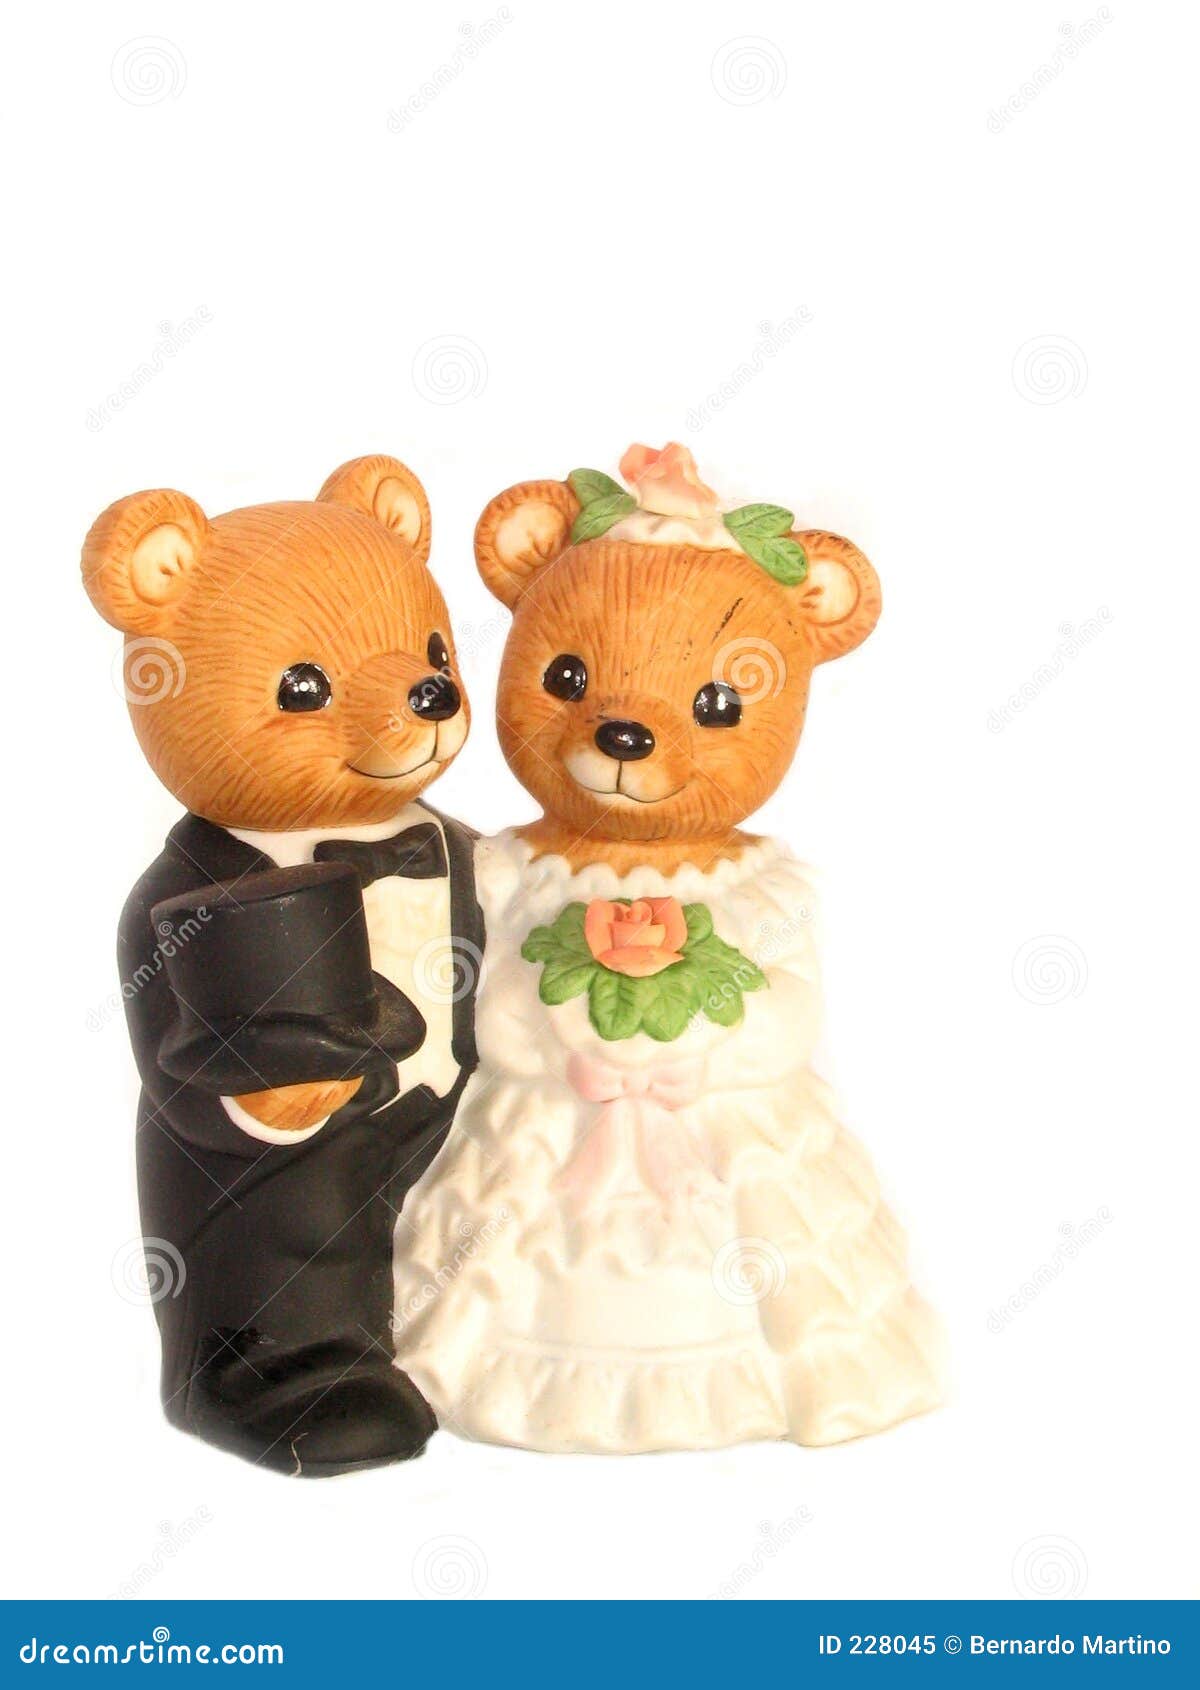 teddy bear bride and groom clipart - photo #2